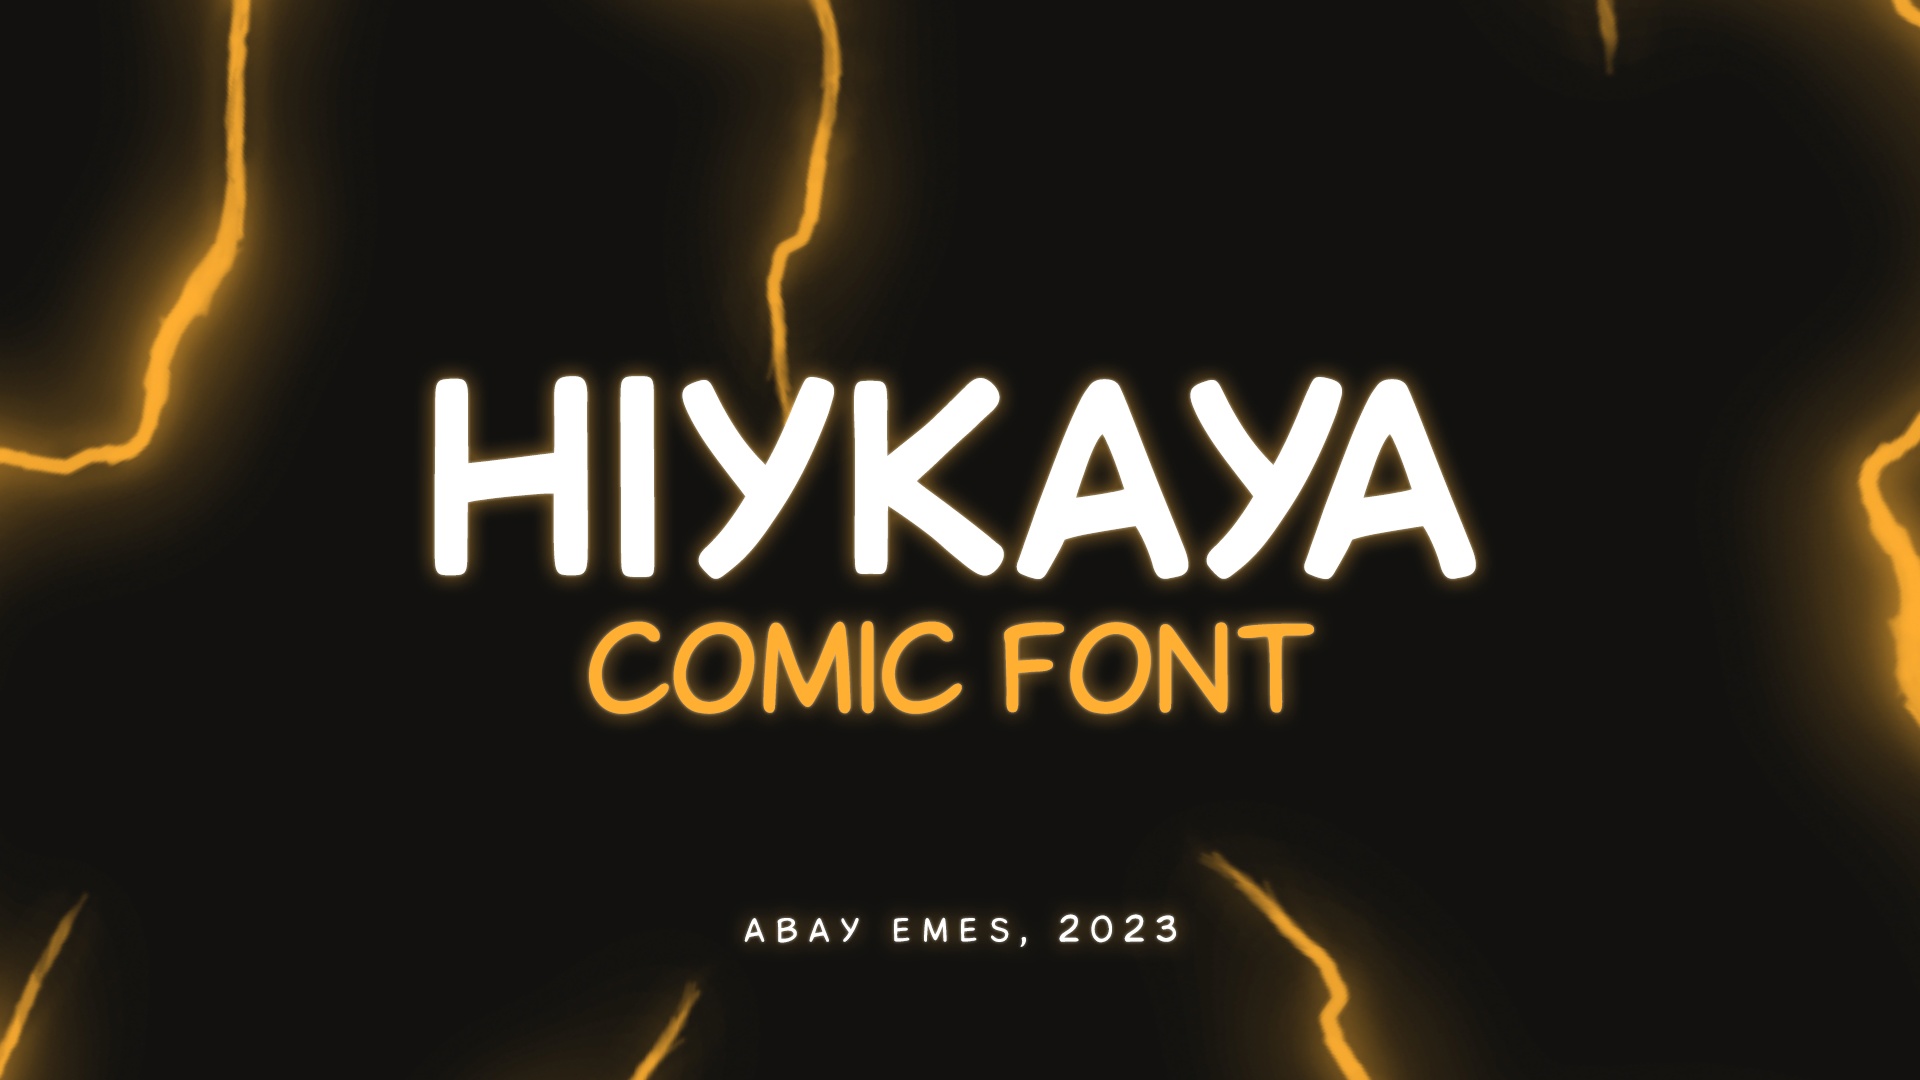 Font Hiykaya